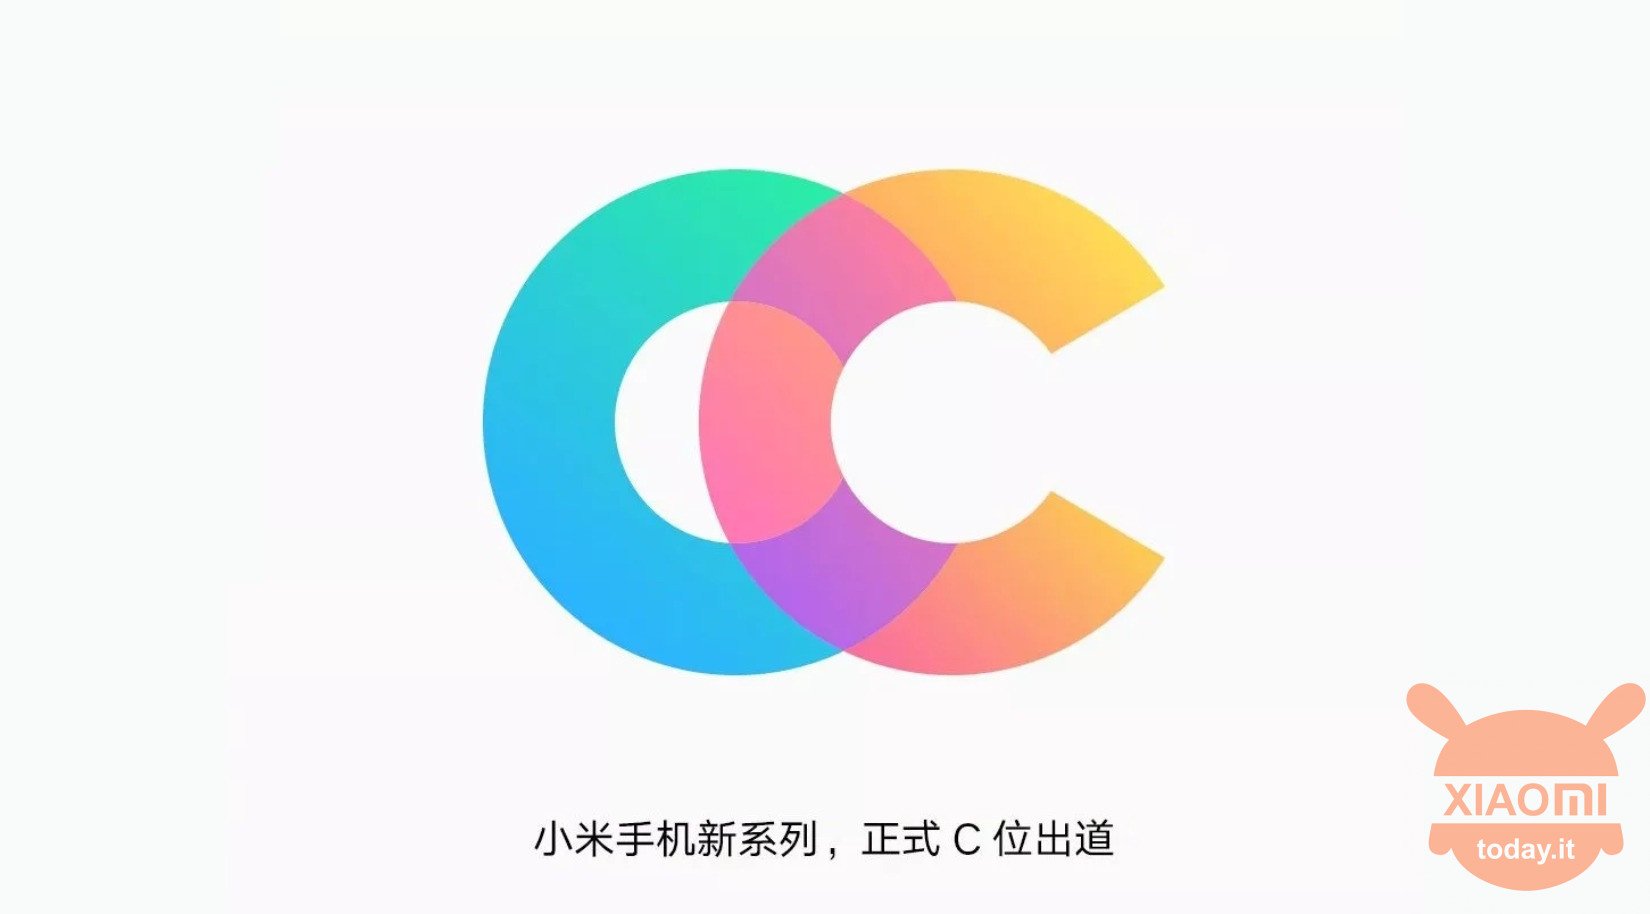 Xiaomi CC Meiu